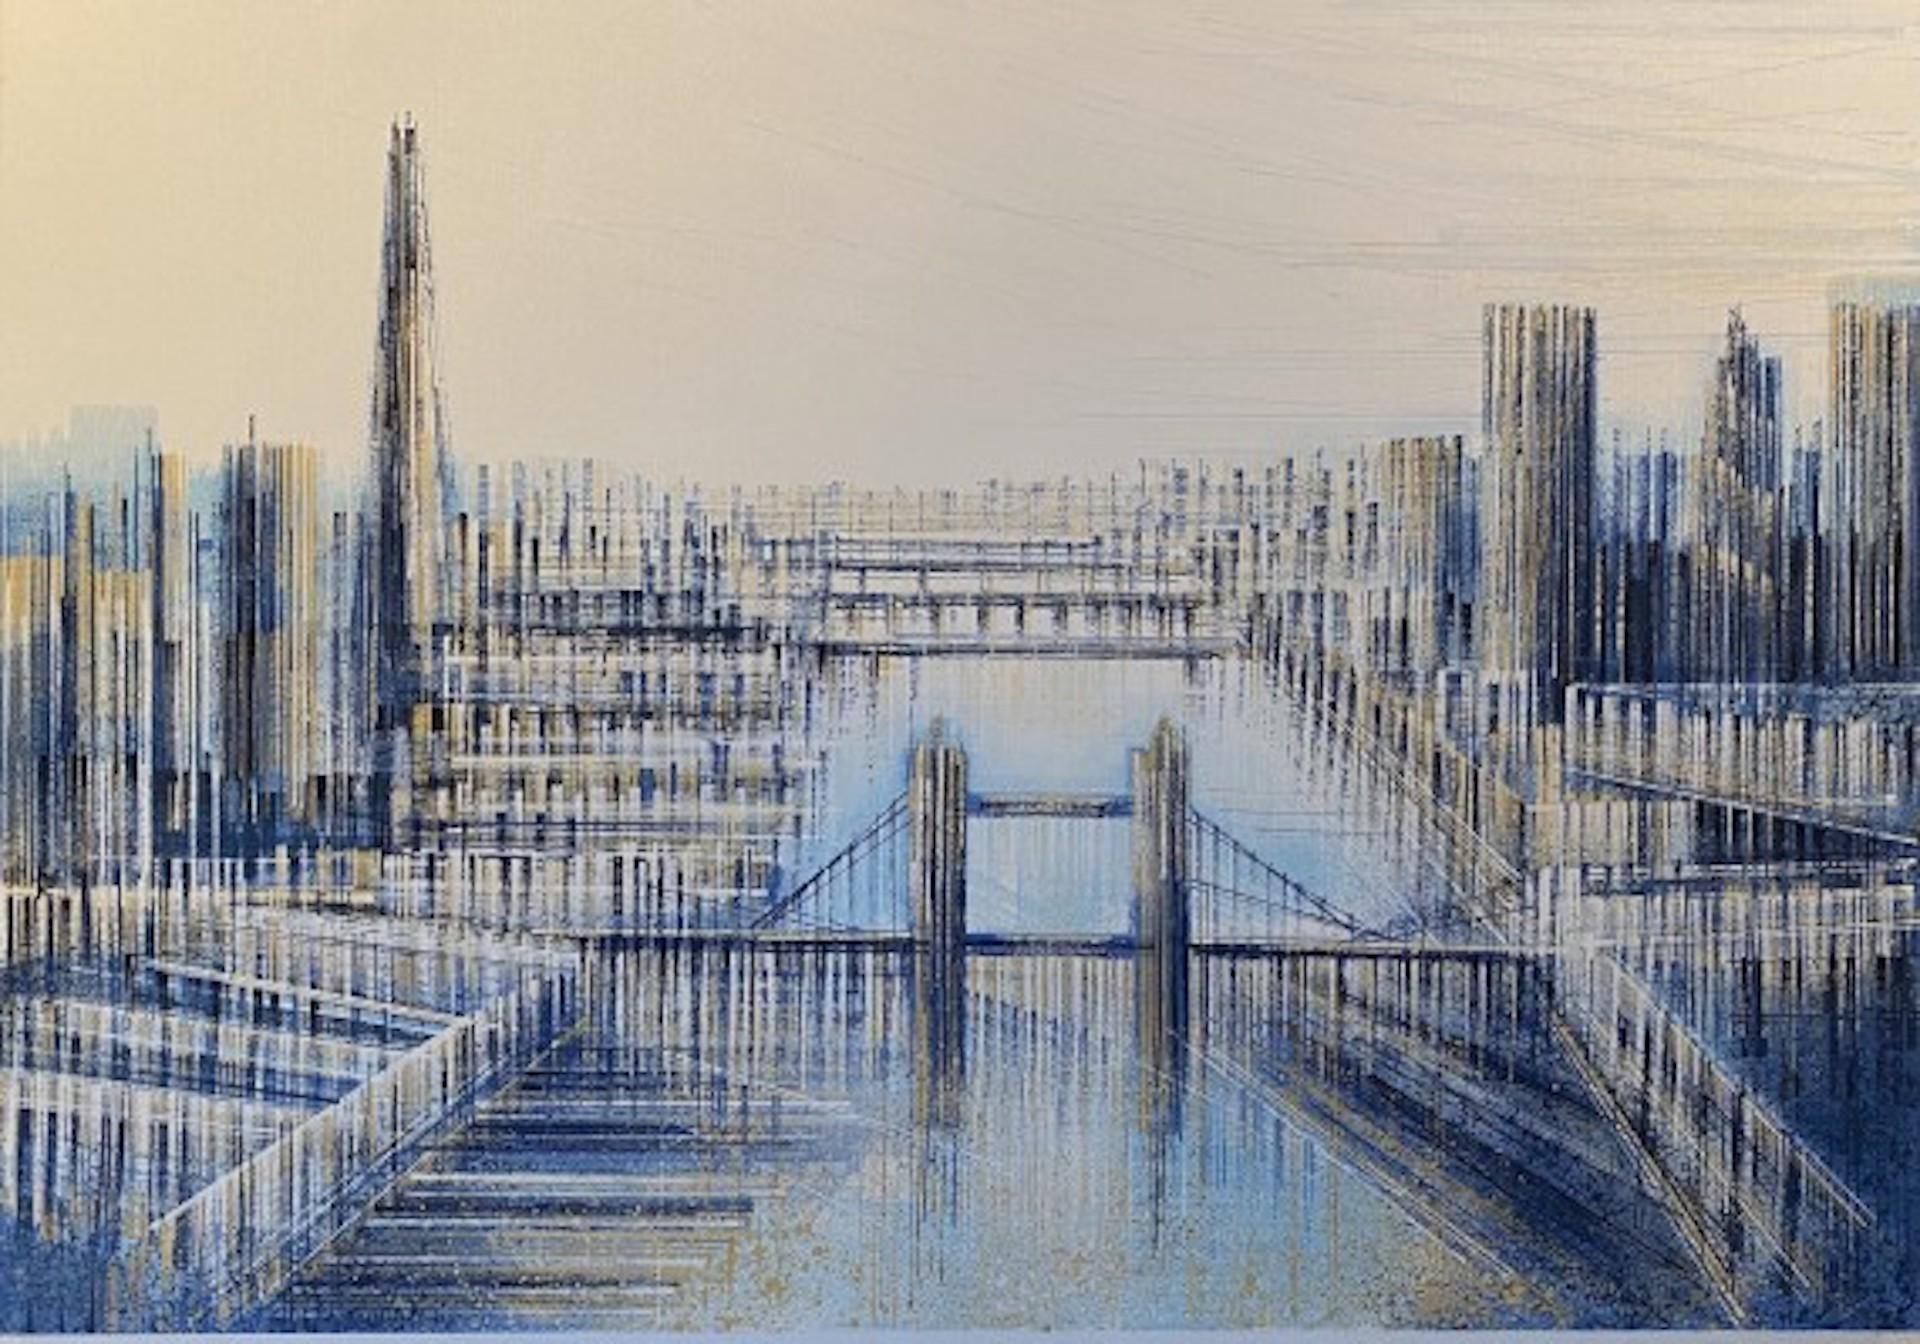 Shard et Tower Bridge [2020]
Original
Architecture
Acrylique sur toile
Taille : H:70 cm x L:100 cm x P:4cm
Vendu sans cadre
Veuillez noter que les images insitu ne sont qu'une indication de l'aspect d'une pièce.

Shard and Tower Bridge est une